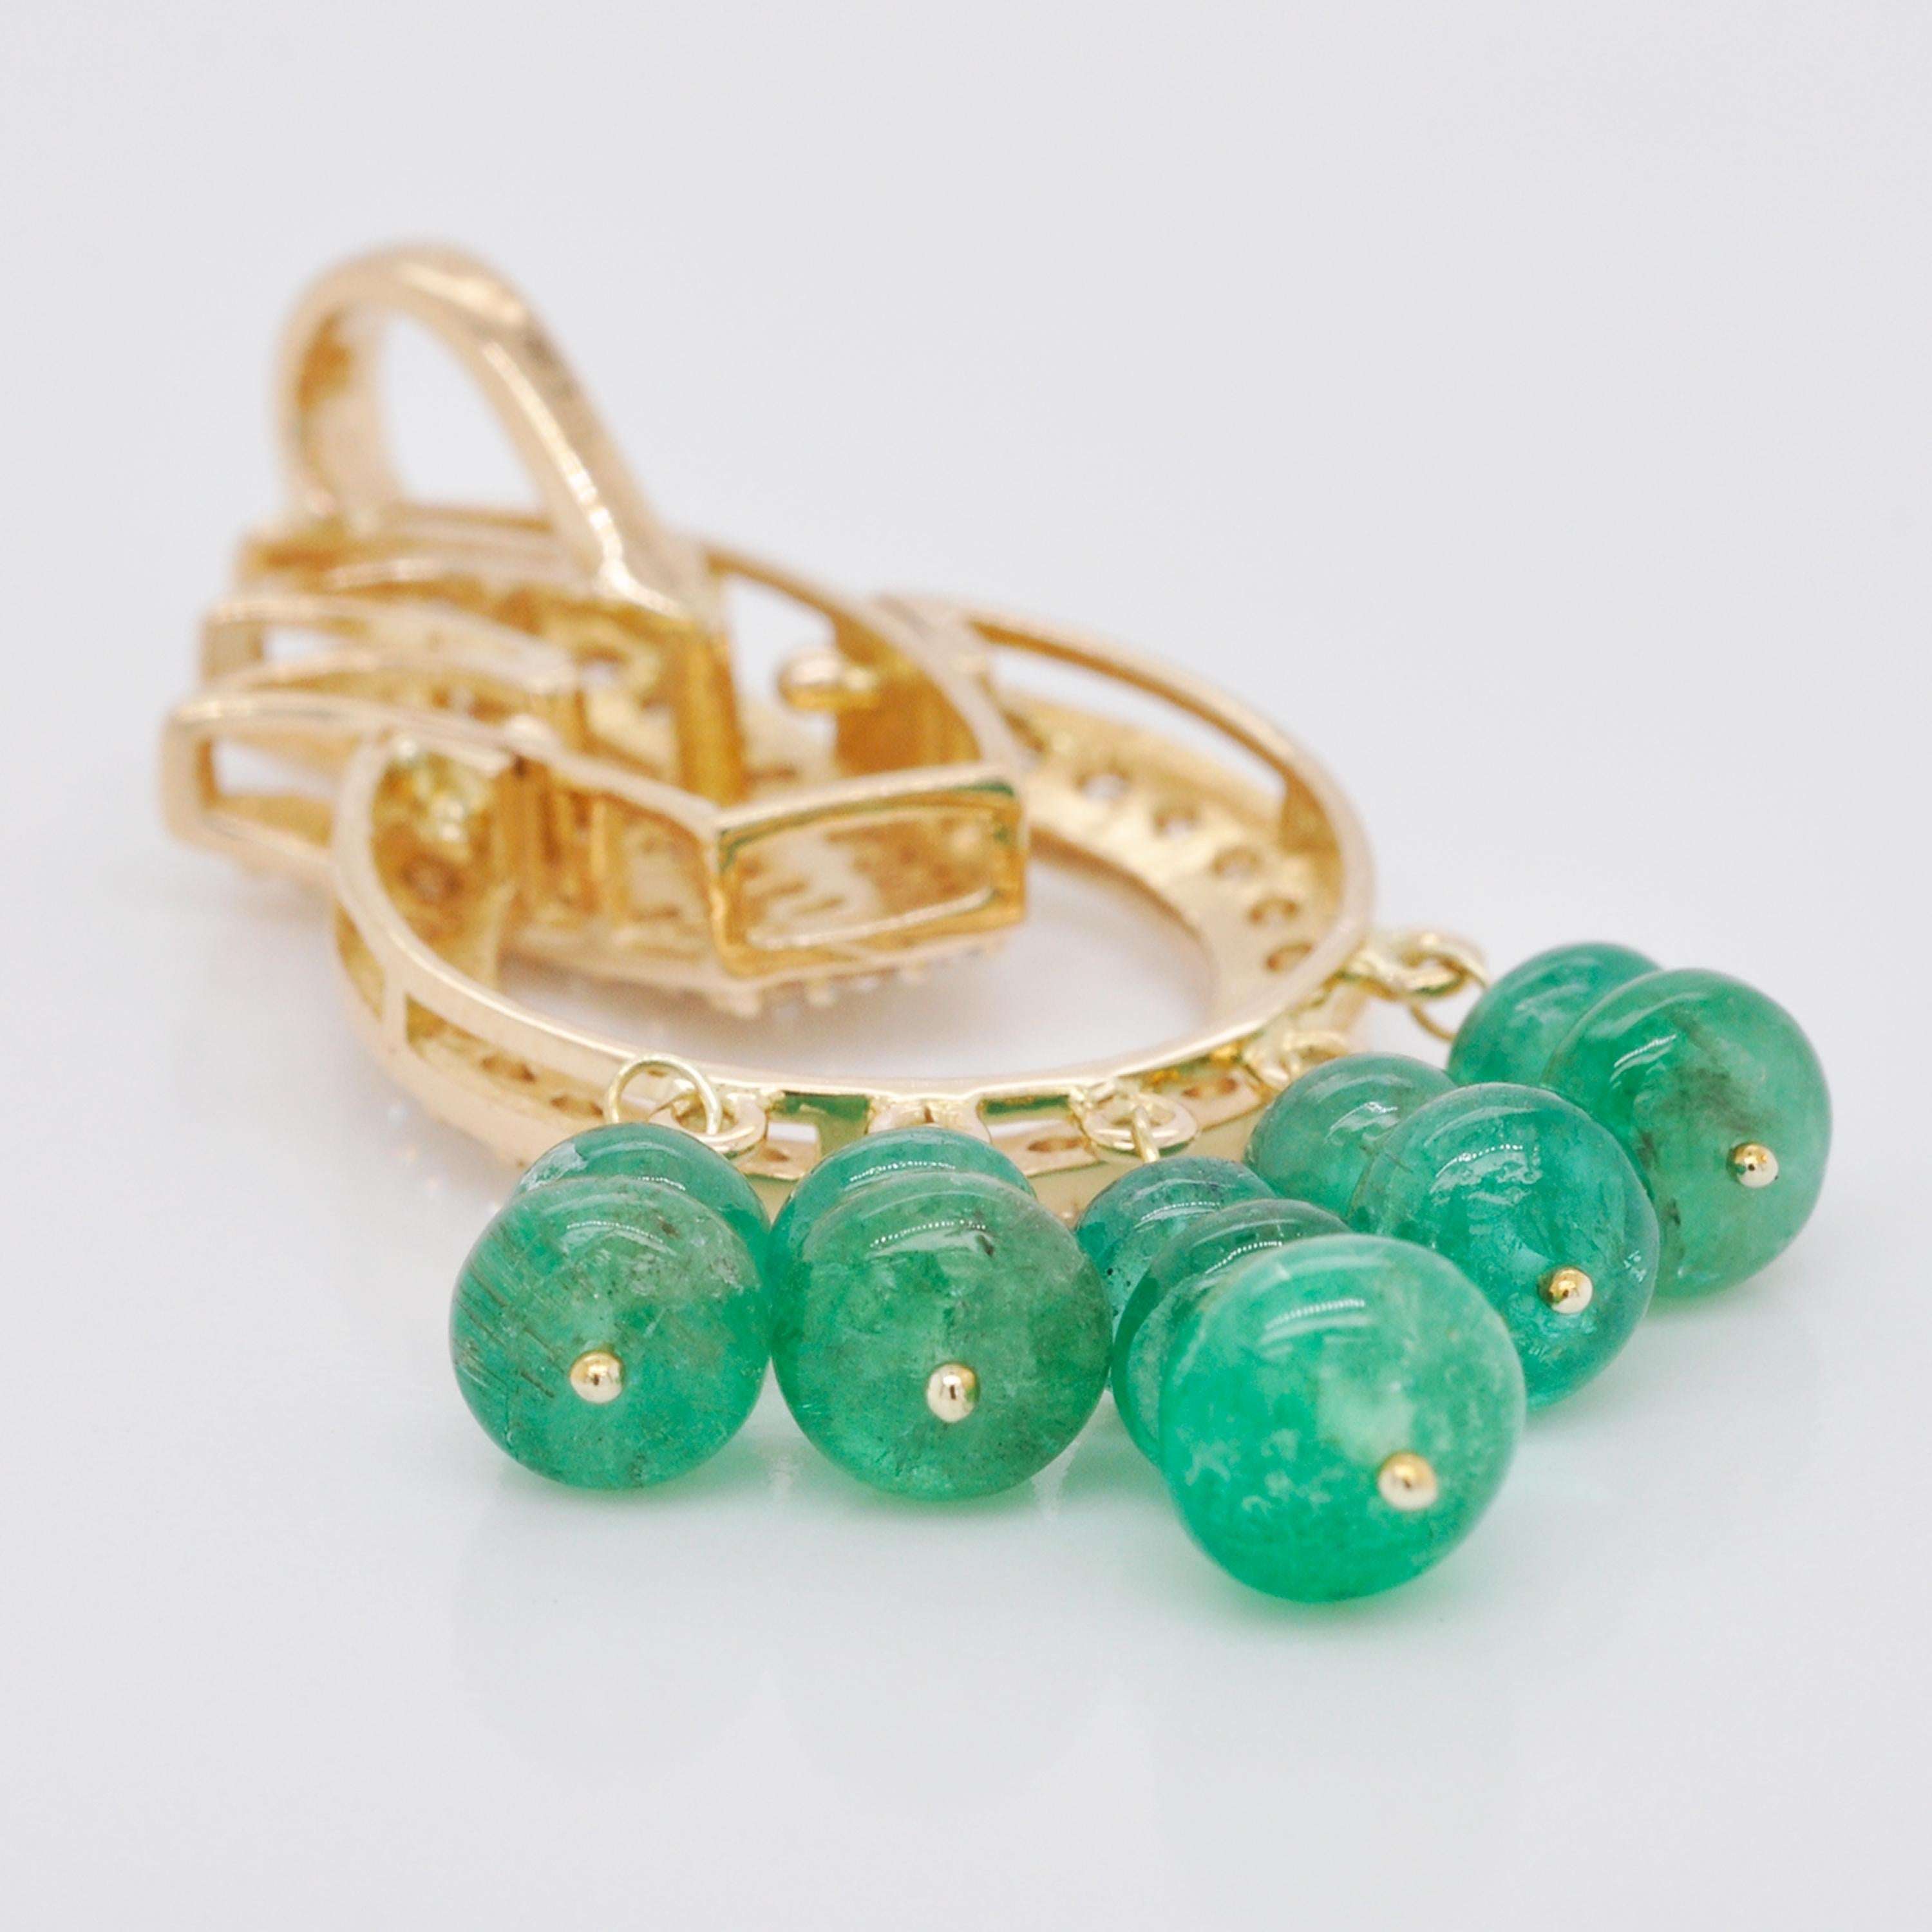 18 Karat Yellow Gold Diamond Zambian Emerald Beads Pendant Necklace For Sale 2